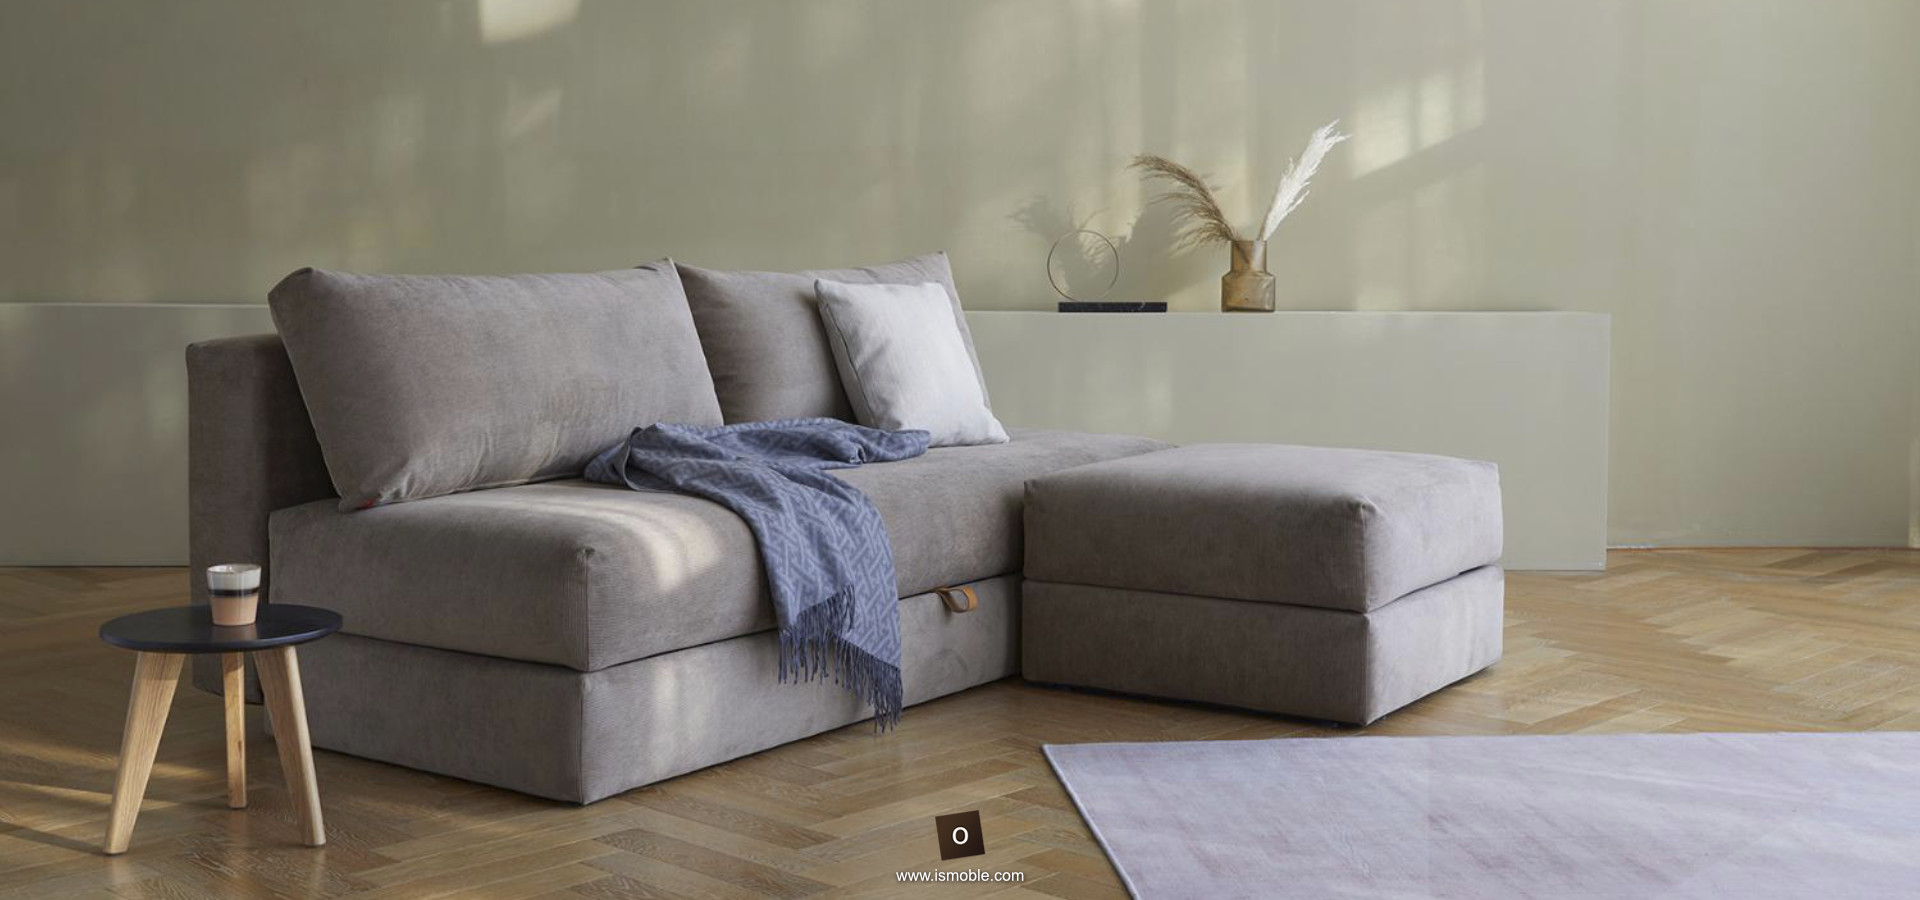 Sofá-cama de estilo minimalista con almacenamiento debajo del asiento